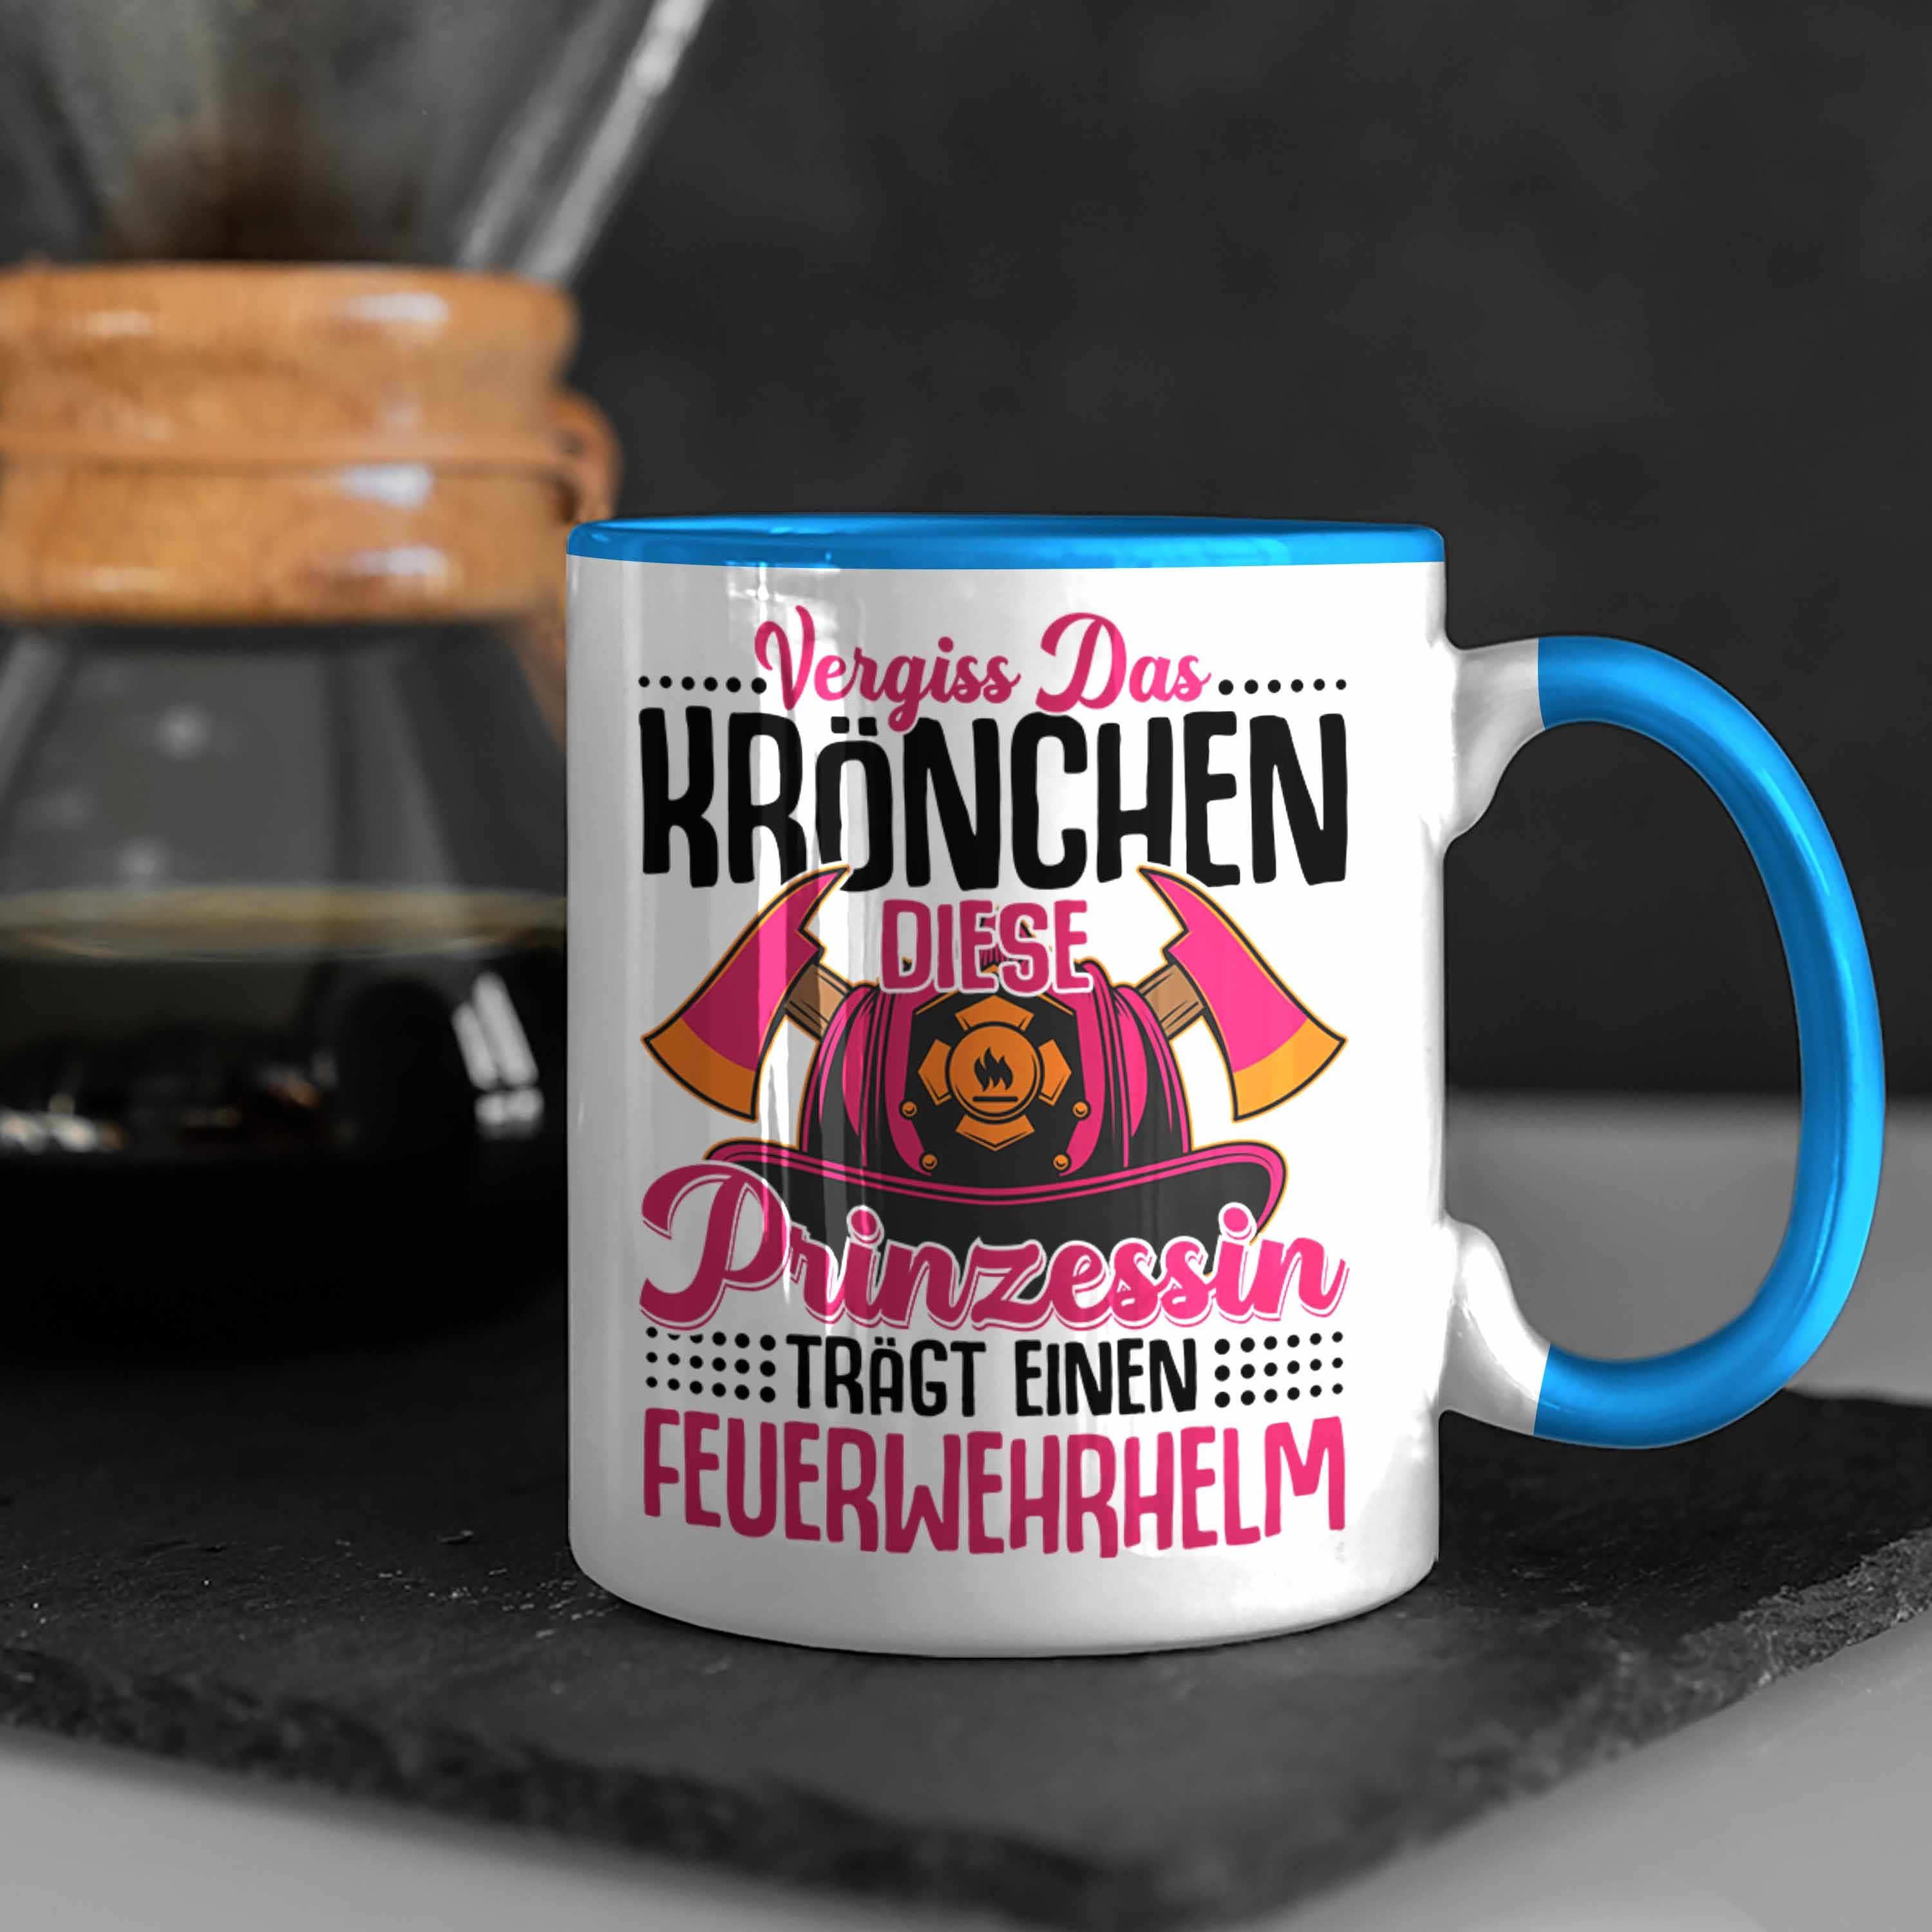 Trendation Tasse Trendation Frauen Das Feuerwehrfrauen Frau Krönchen Geschenk Spruch - Tasse Geschenkidee Blau Vergiss Feuerwehr